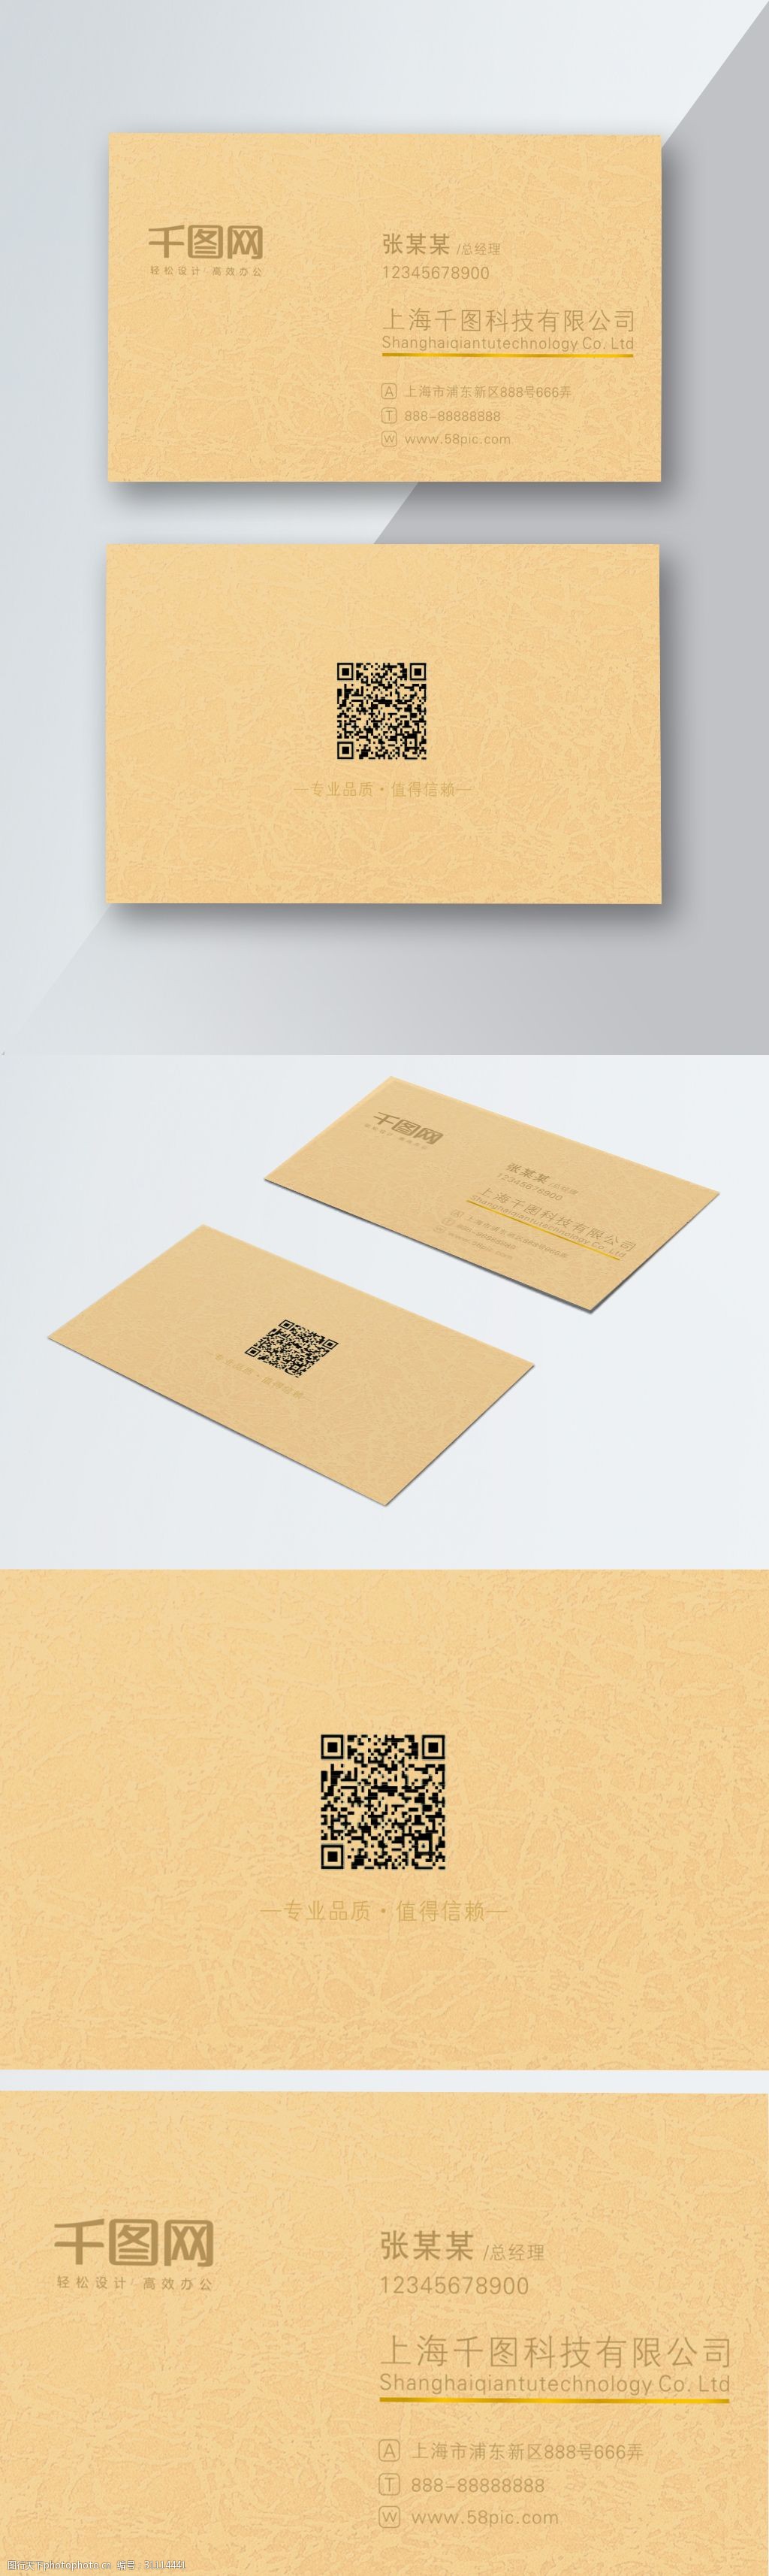 设计图库 名片卡证 商务名片 上传 2018-12-5 大小 33.